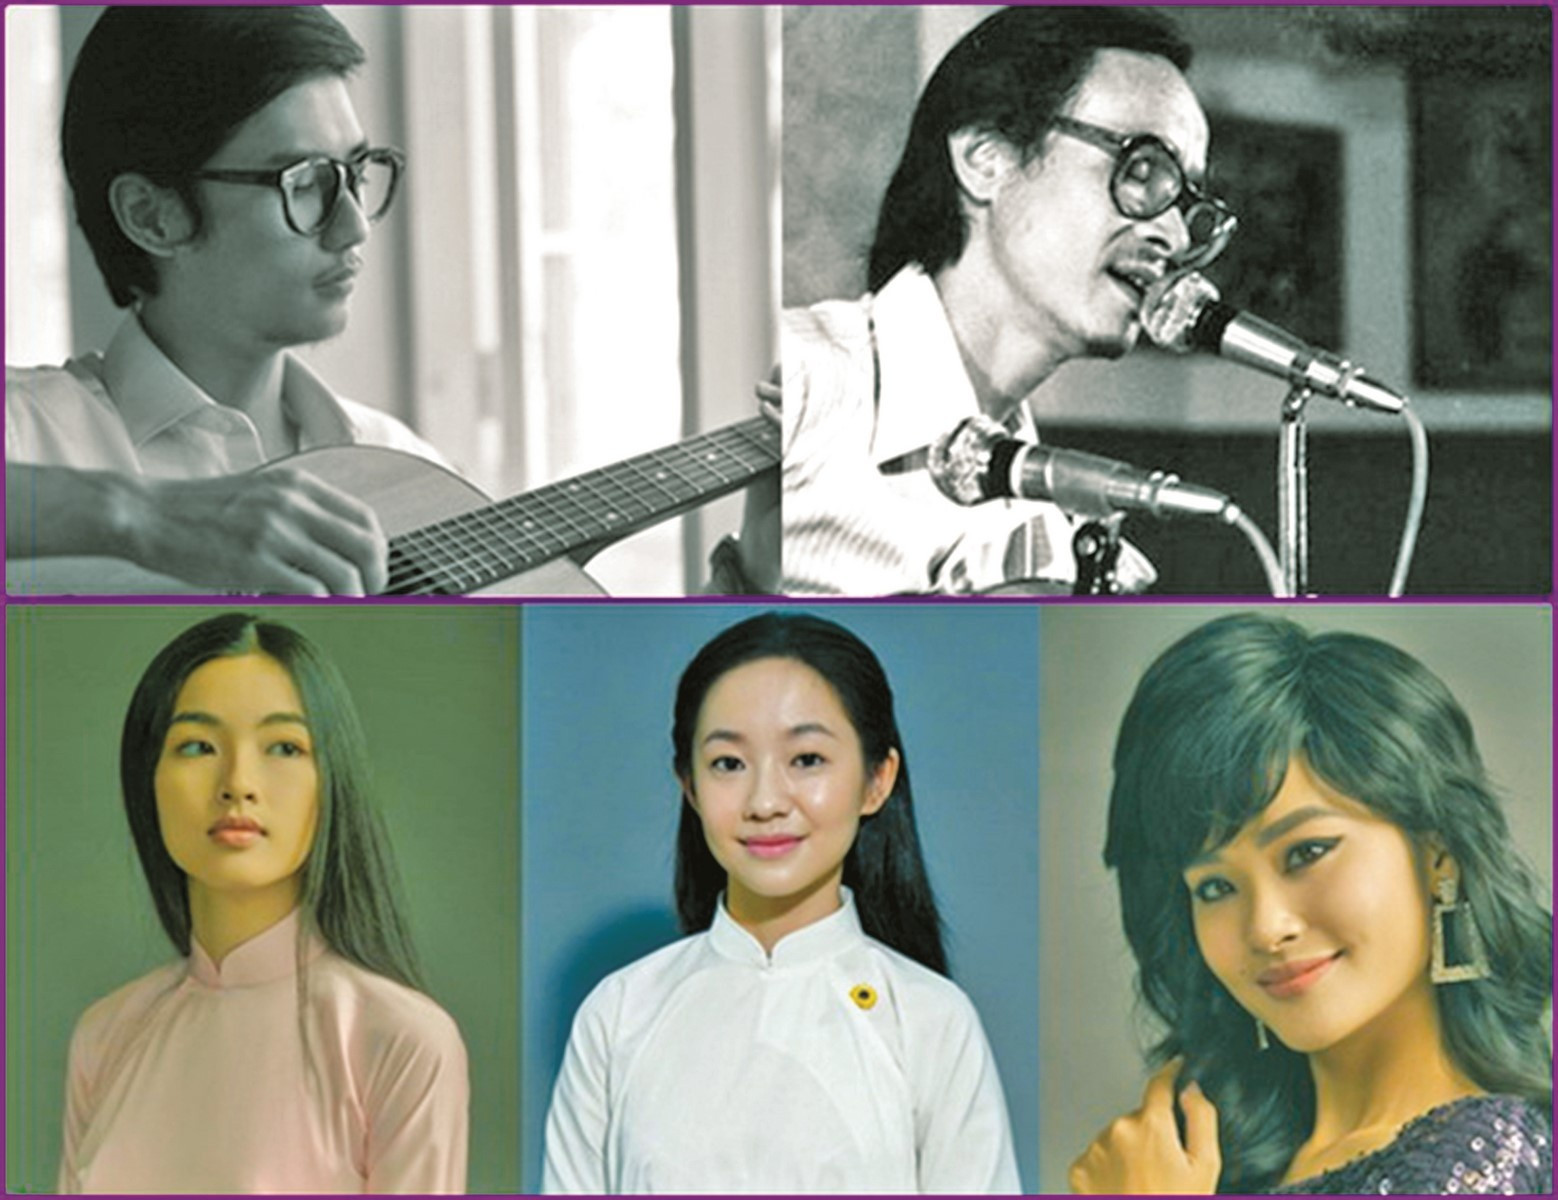 Em và Trịnh là một bộ phim điện ảnh Việt Nam do Phan Gia Nhật Linh đạo diễn, kể về cuộc đời của cố nhạc sĩ Trịnh Công Sơn.